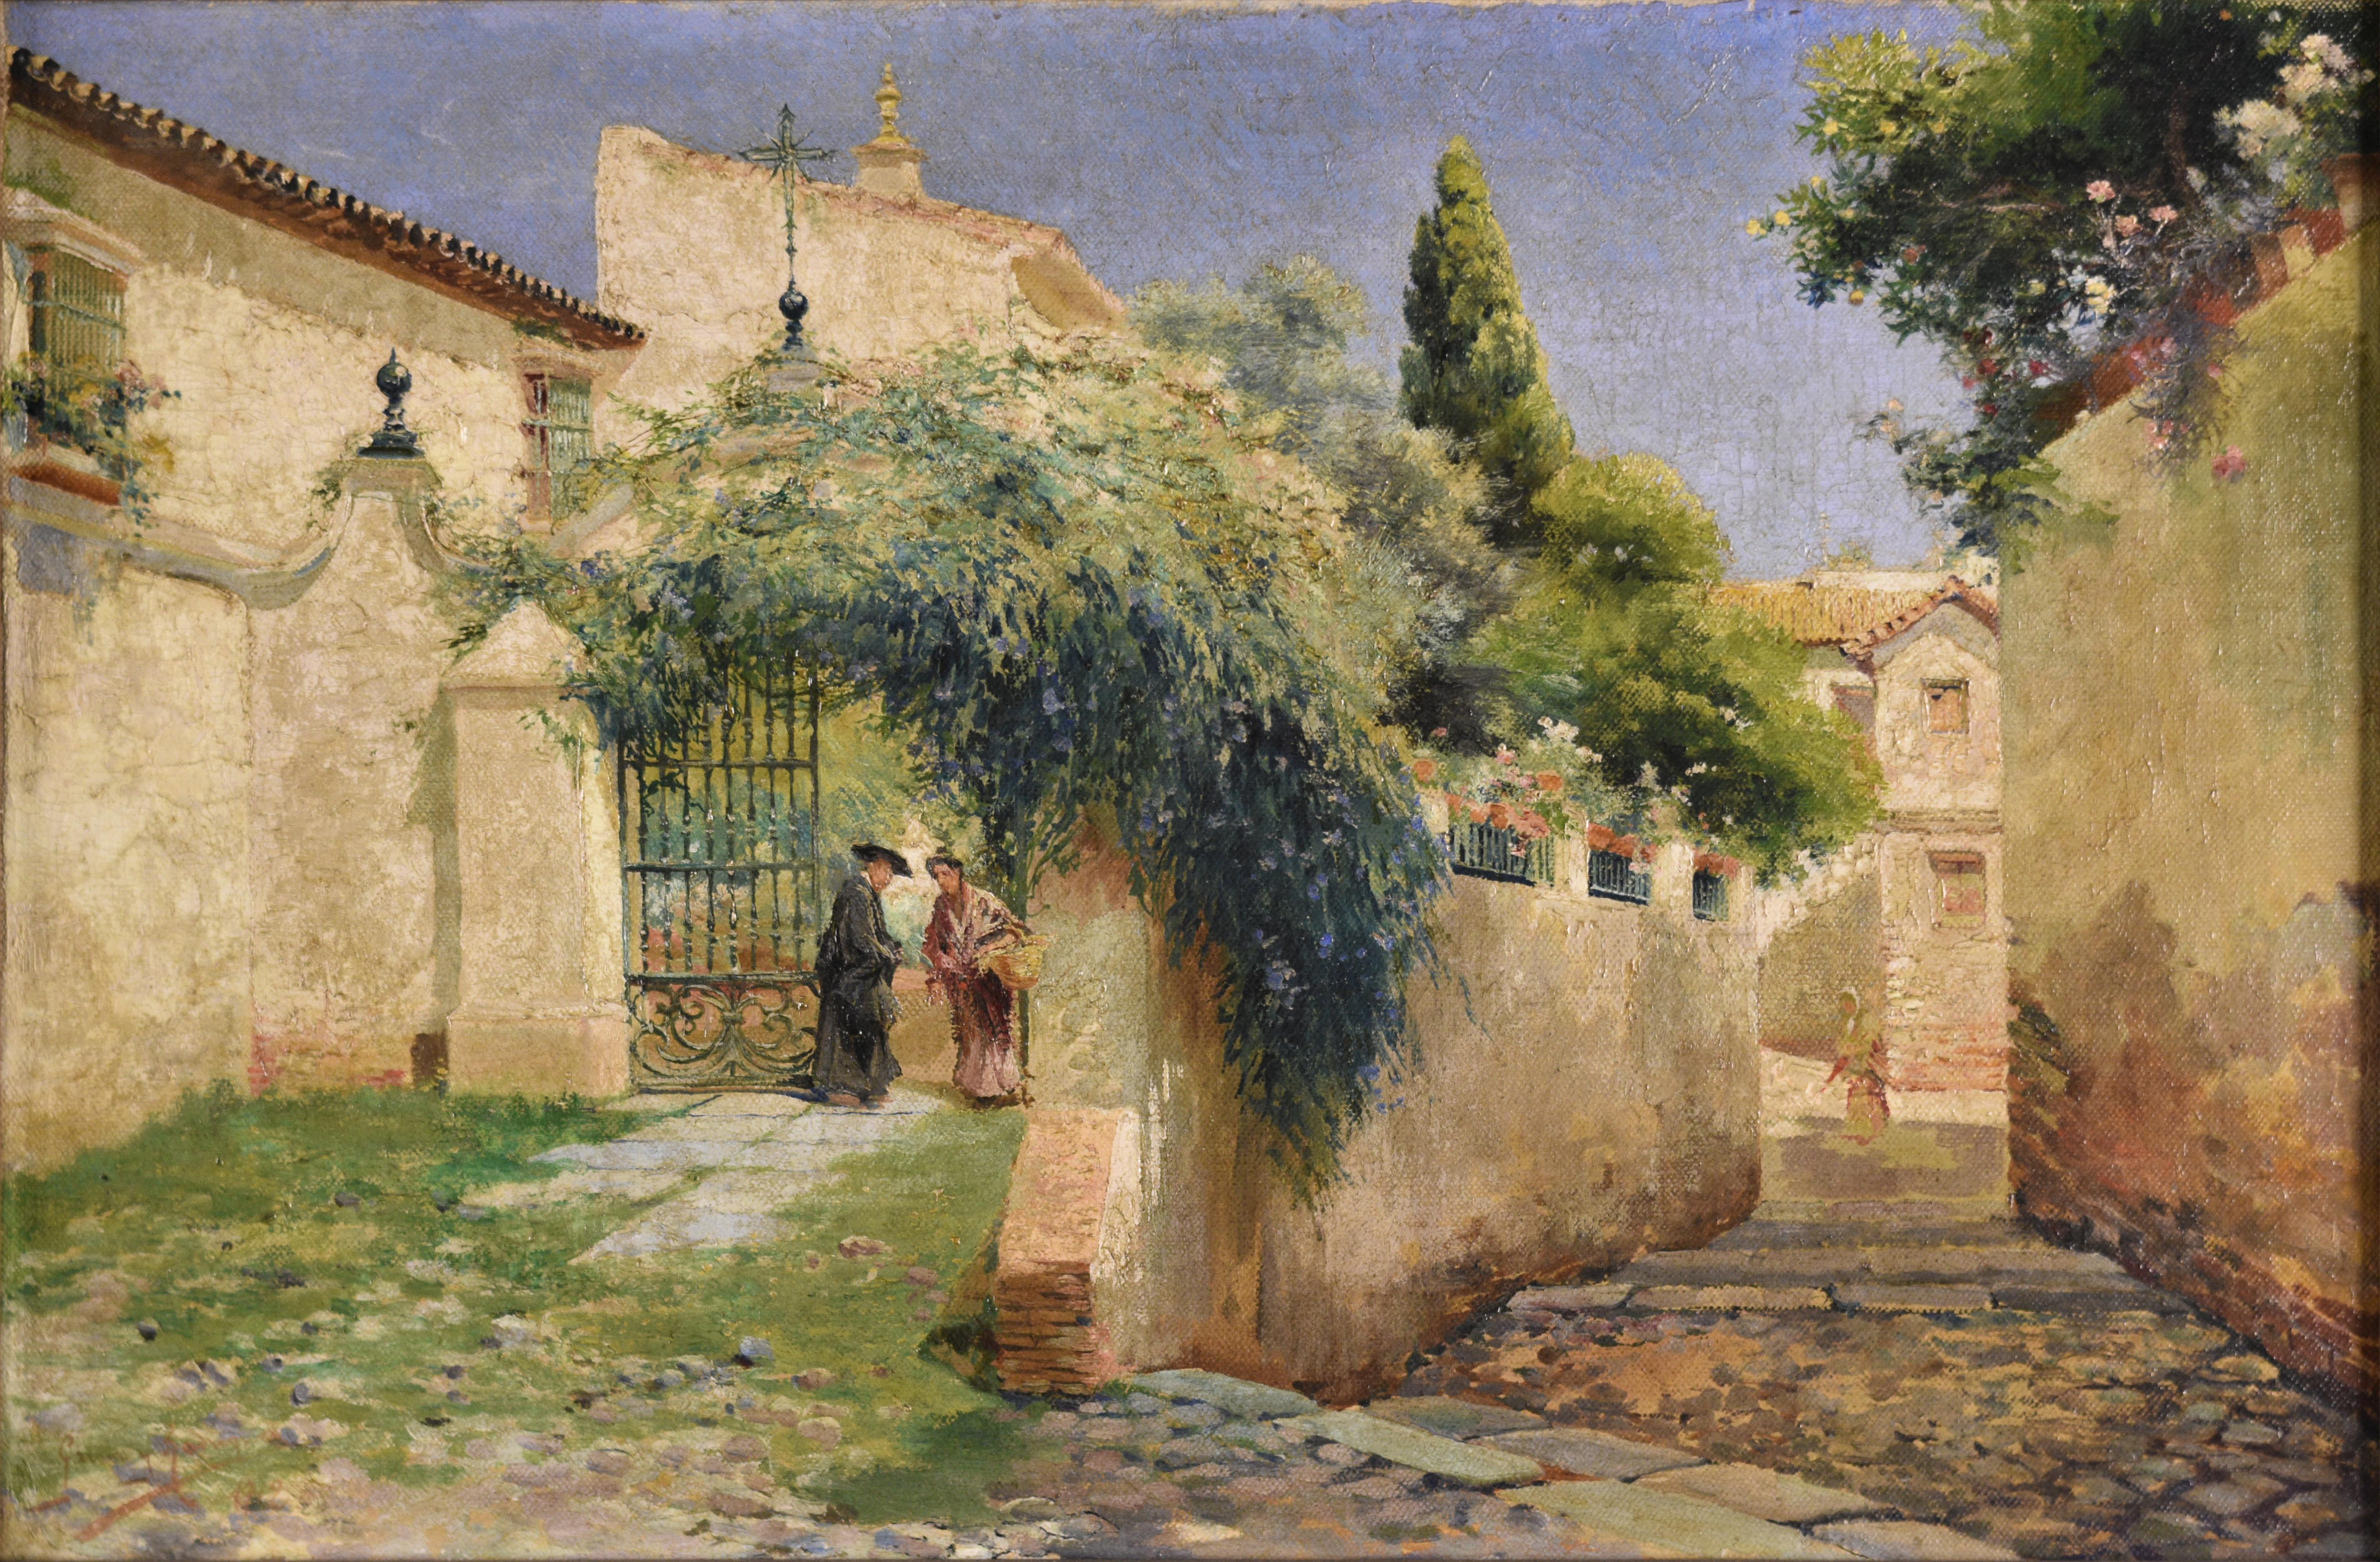 Calles de Sevilla, 1912 - Painting by Manuel García y Rodríguez